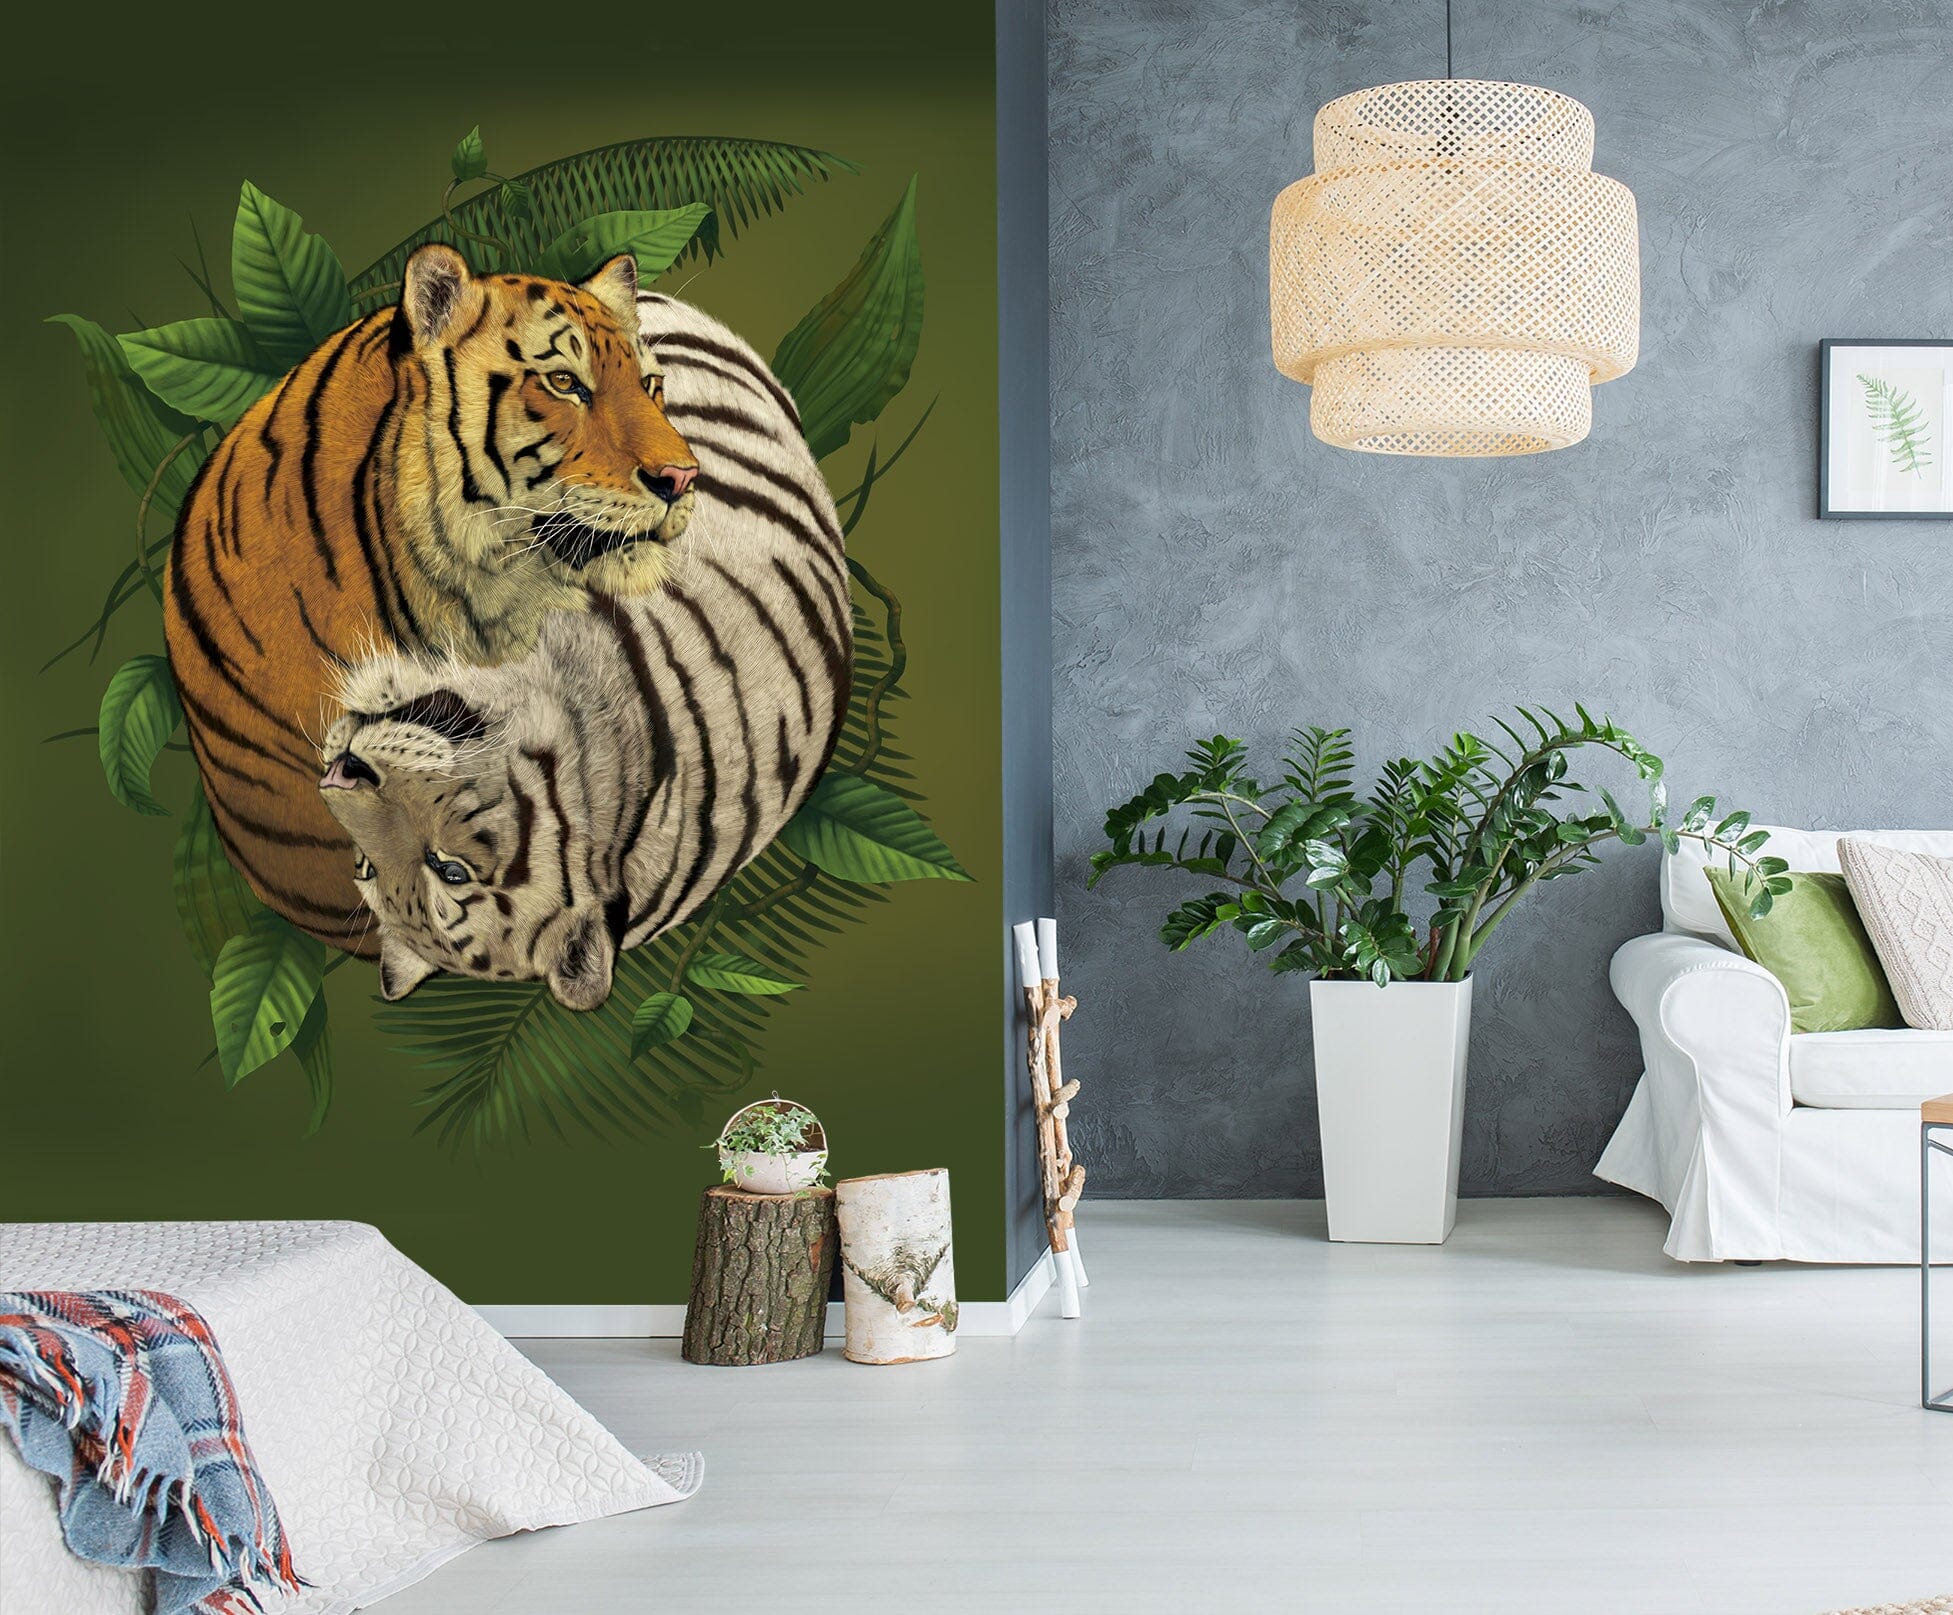 3D Tiger 1558 Wall Murals Exclusive Designer Vincent Wallpaper AJ Wallpaper 2 